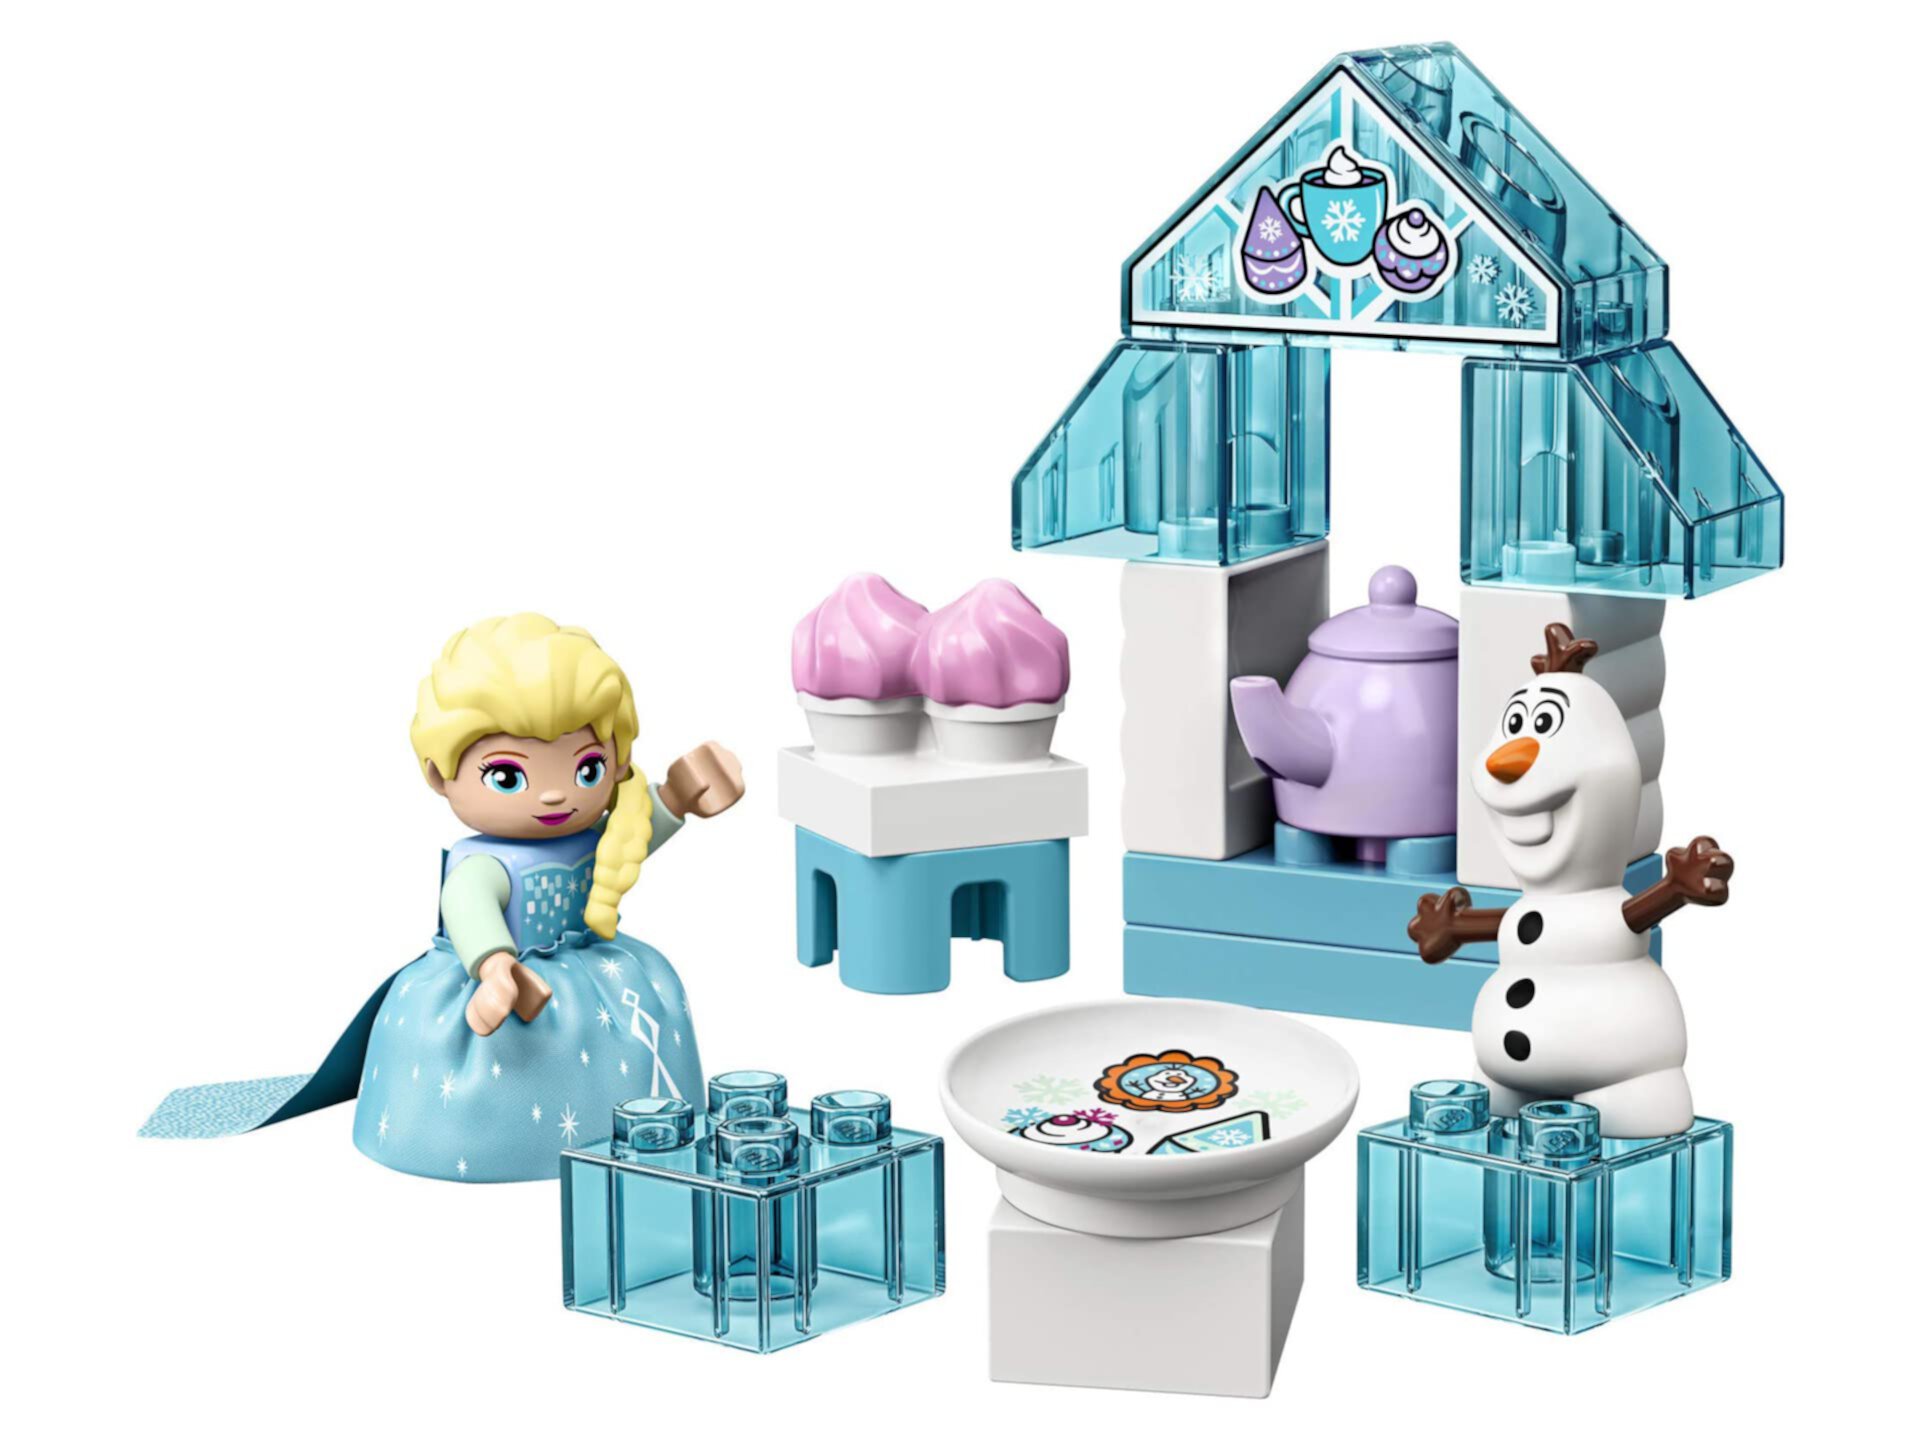 Игрушка LEGO DUPLO Disney Frozen с изображением чаепития Эльзы и Олафа 10920 Disney Frozen Gift для детей и малышей (17 деталей) Lego